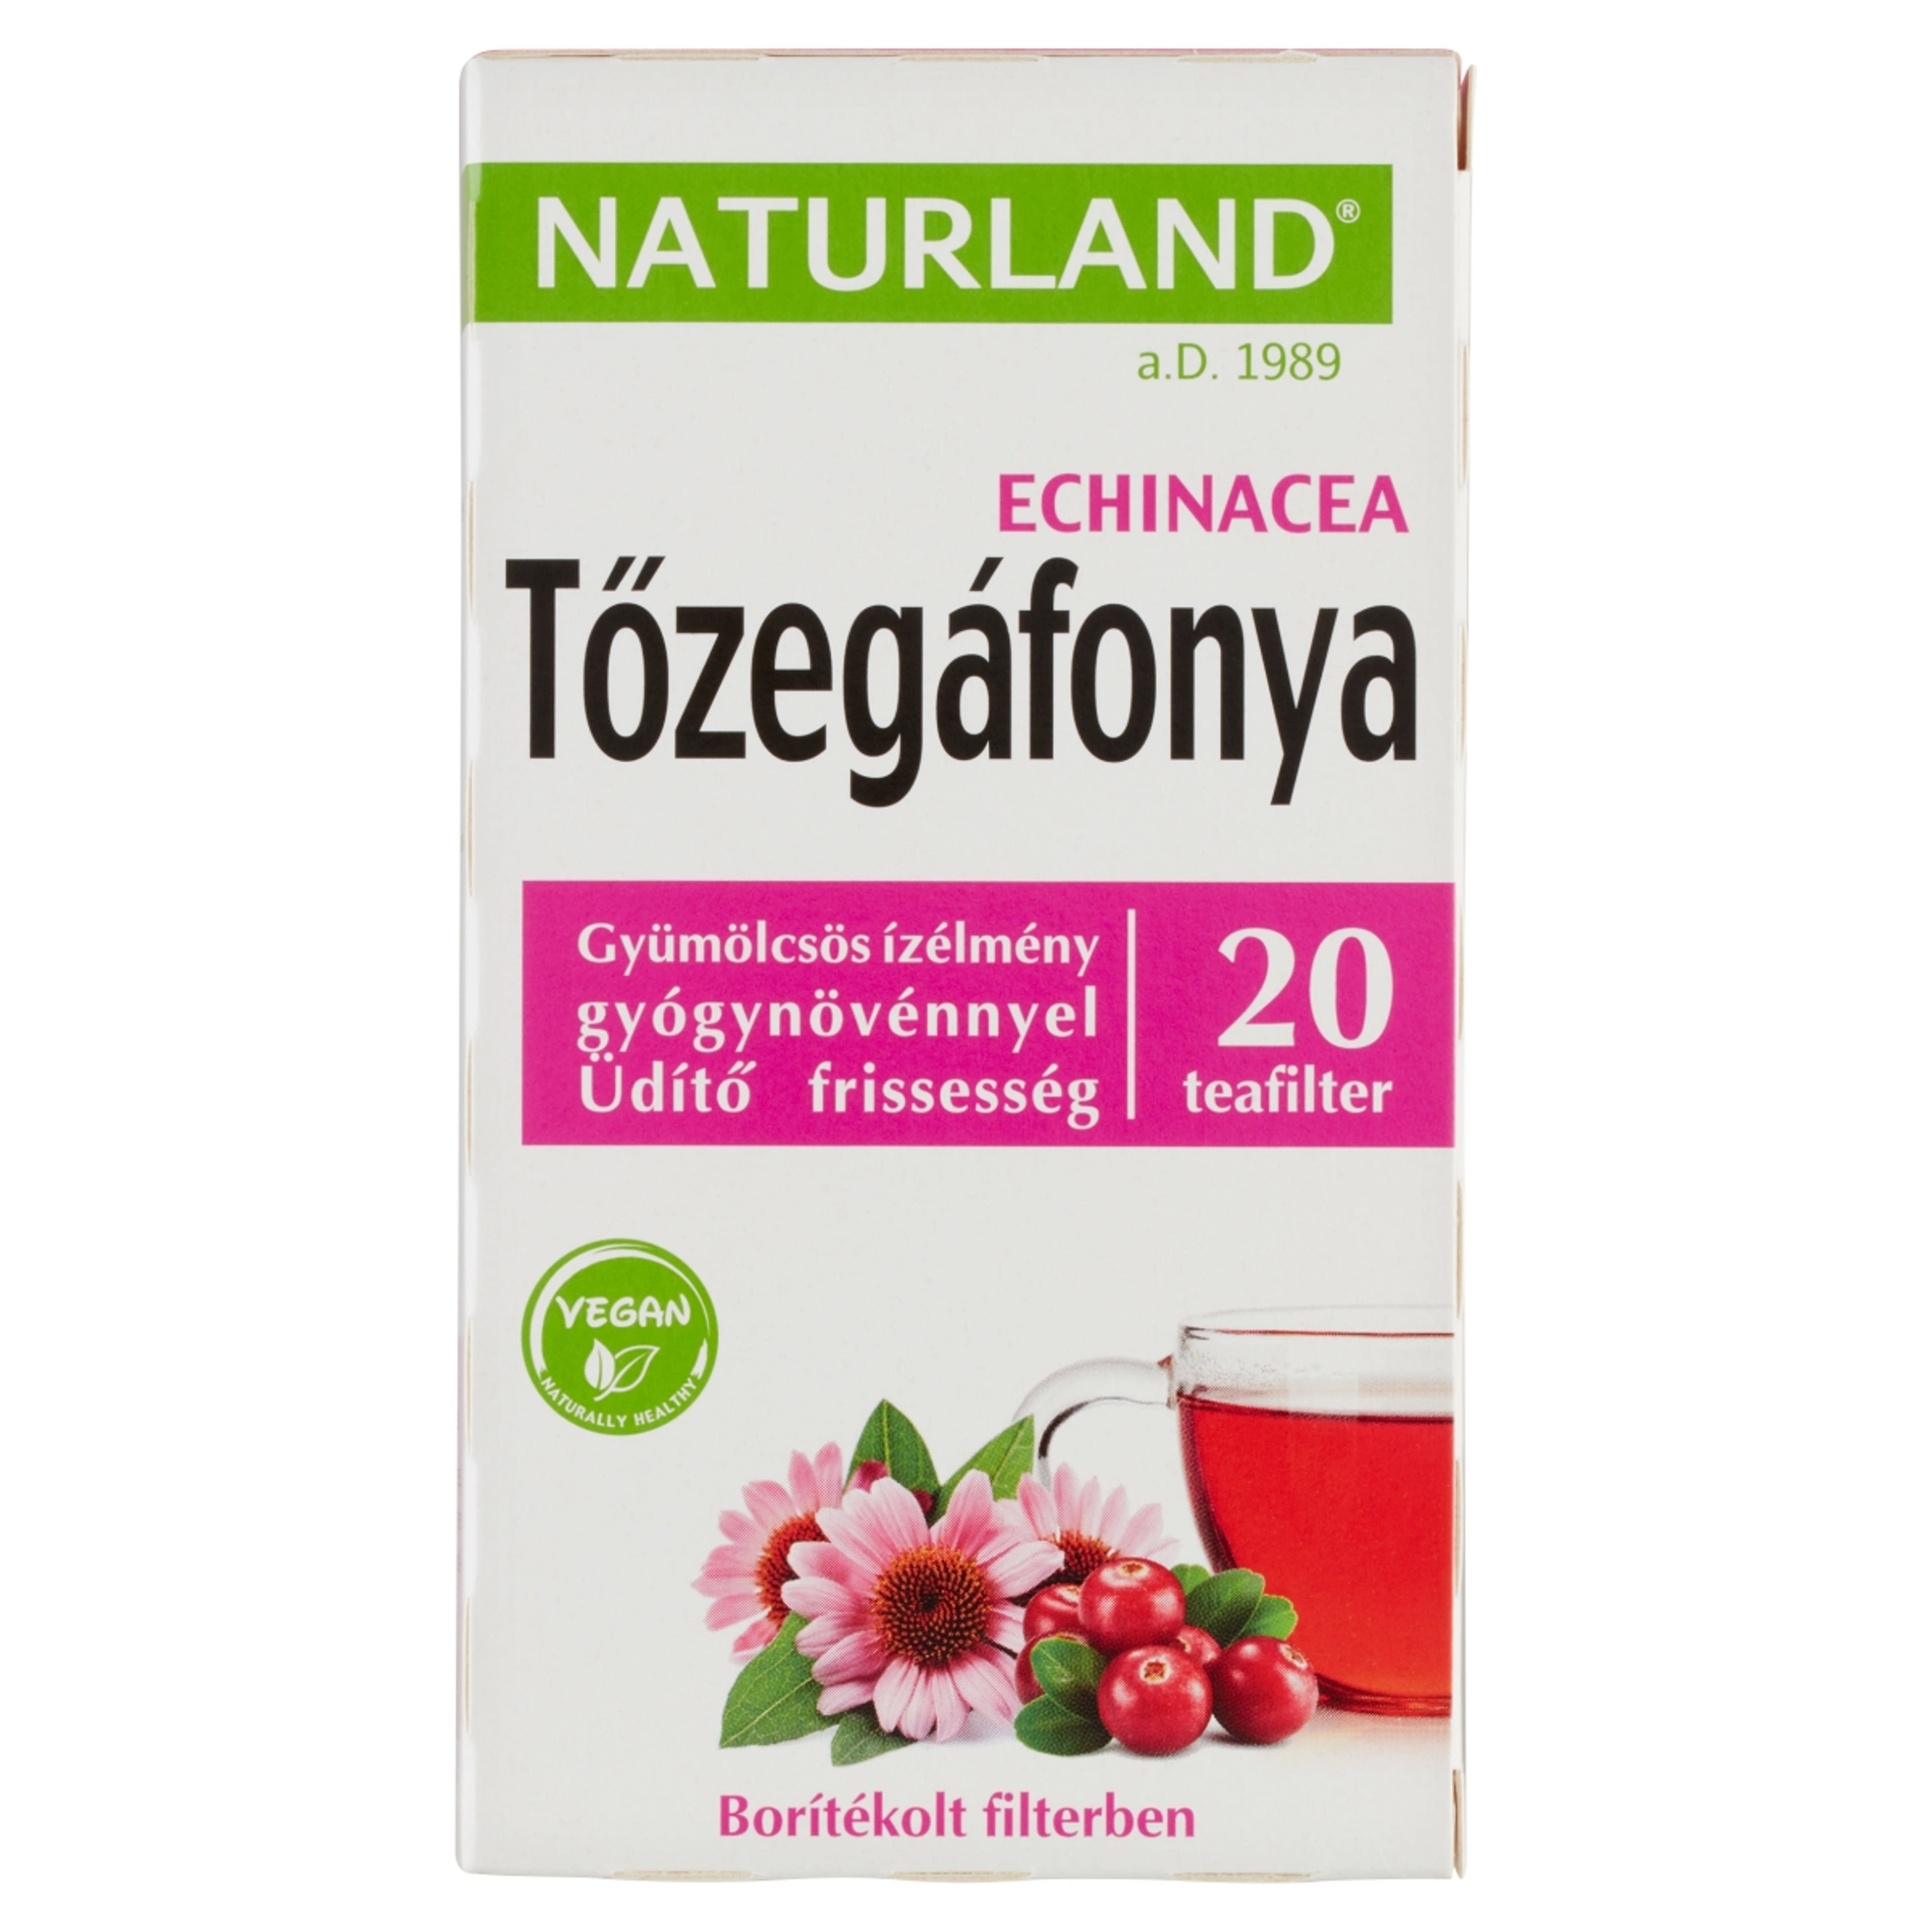 Naturland gyümölcstea tőzegáfonya echinacea - 20 filter - 40 g